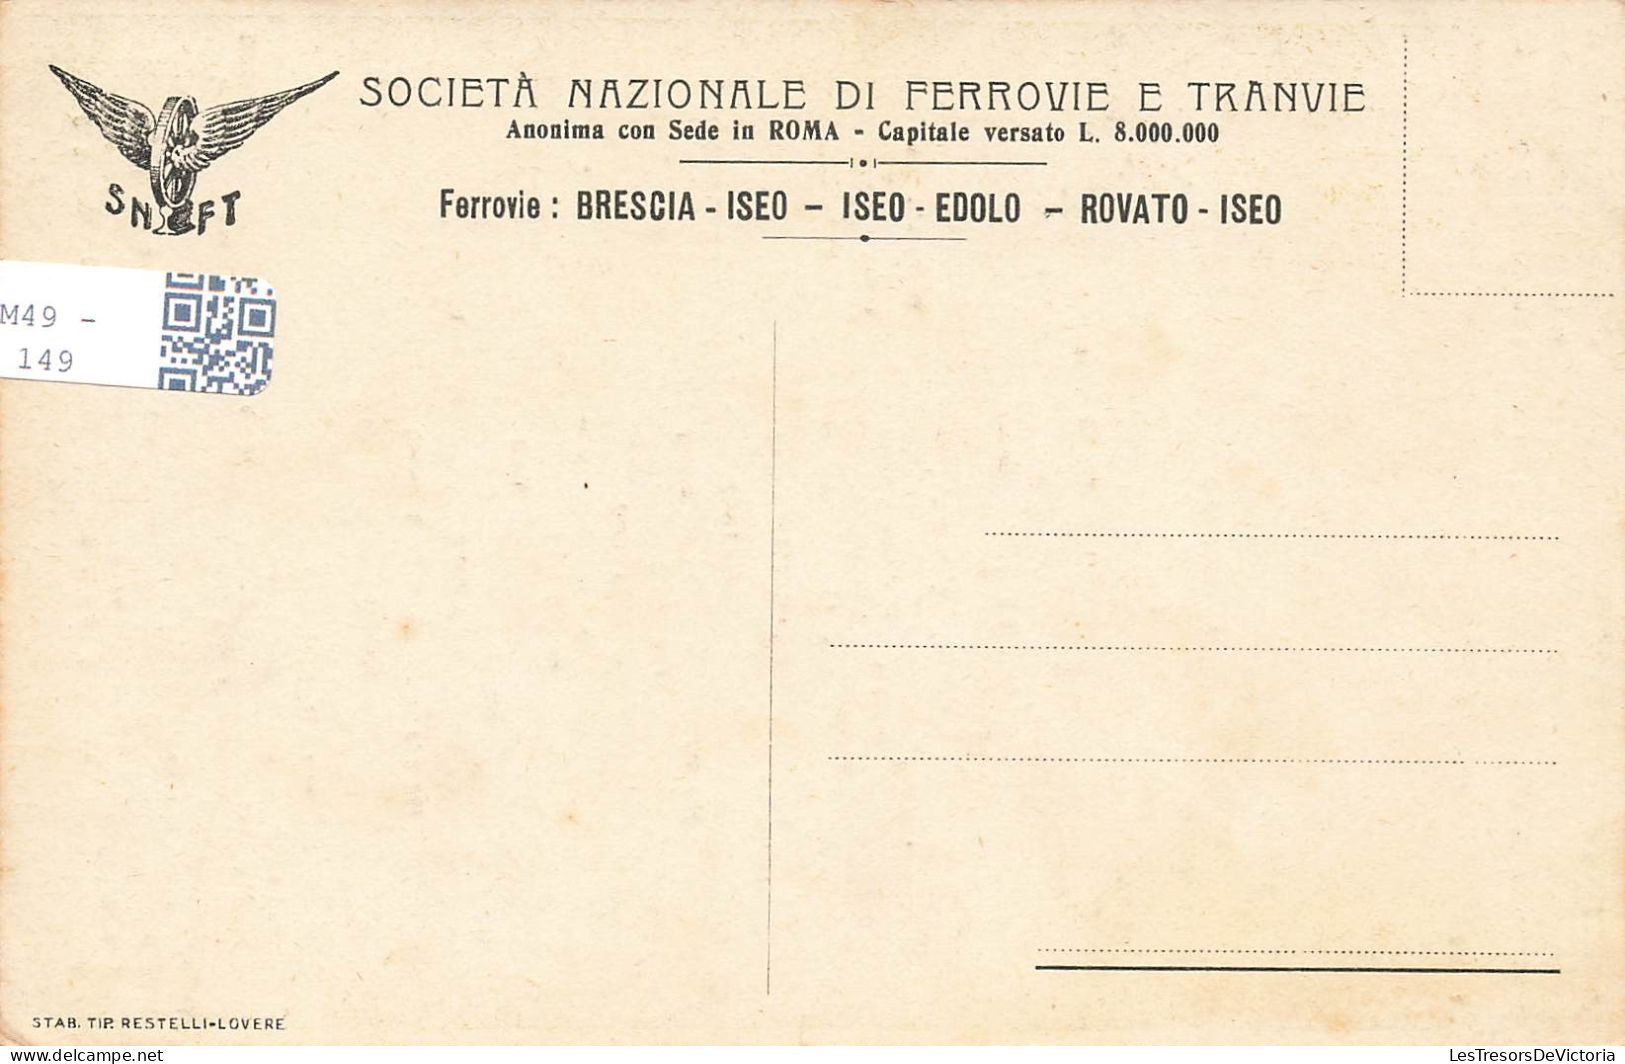 CARTES GEOGRAPHIQUES - Ferrovie - Brescia Iseo - Colorisé - Carte Postale Ancienne - Cartes Géographiques